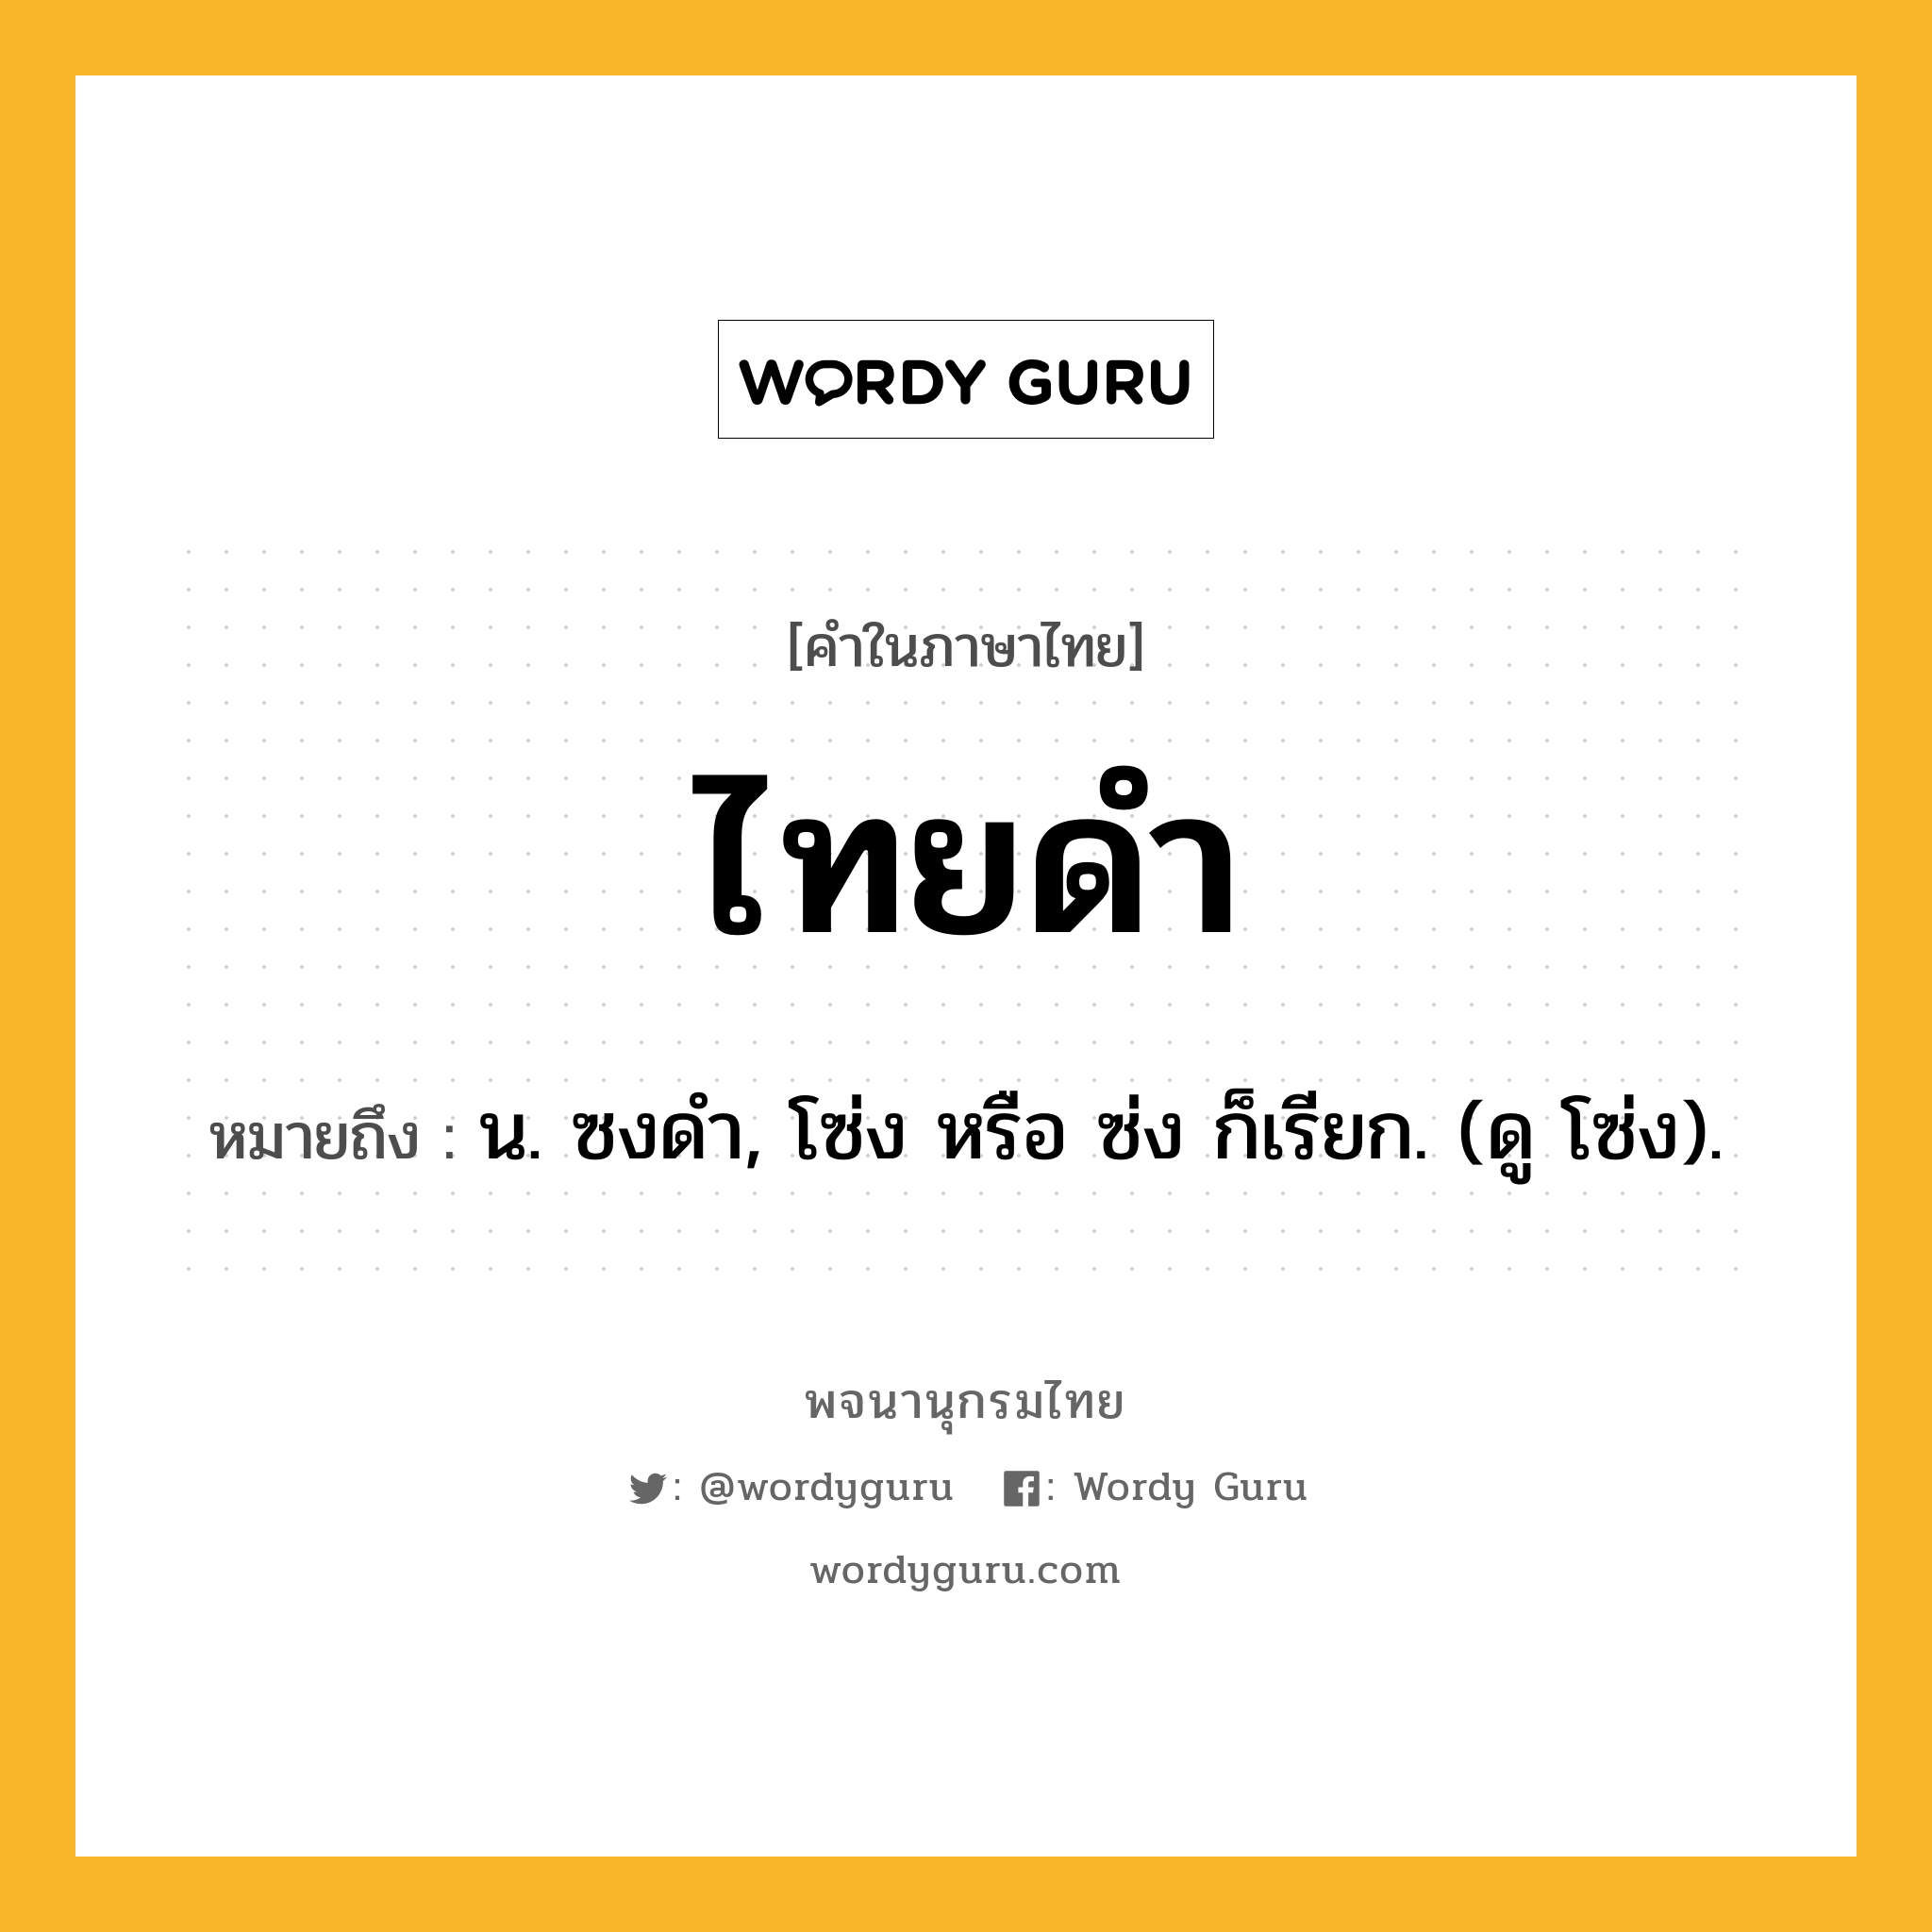 ไทยดำ ความหมาย หมายถึงอะไร?, คำในภาษาไทย ไทยดำ หมายถึง น. ซงดํา, โซ่ง หรือ ซ่ง ก็เรียก. (ดู โซ่ง).